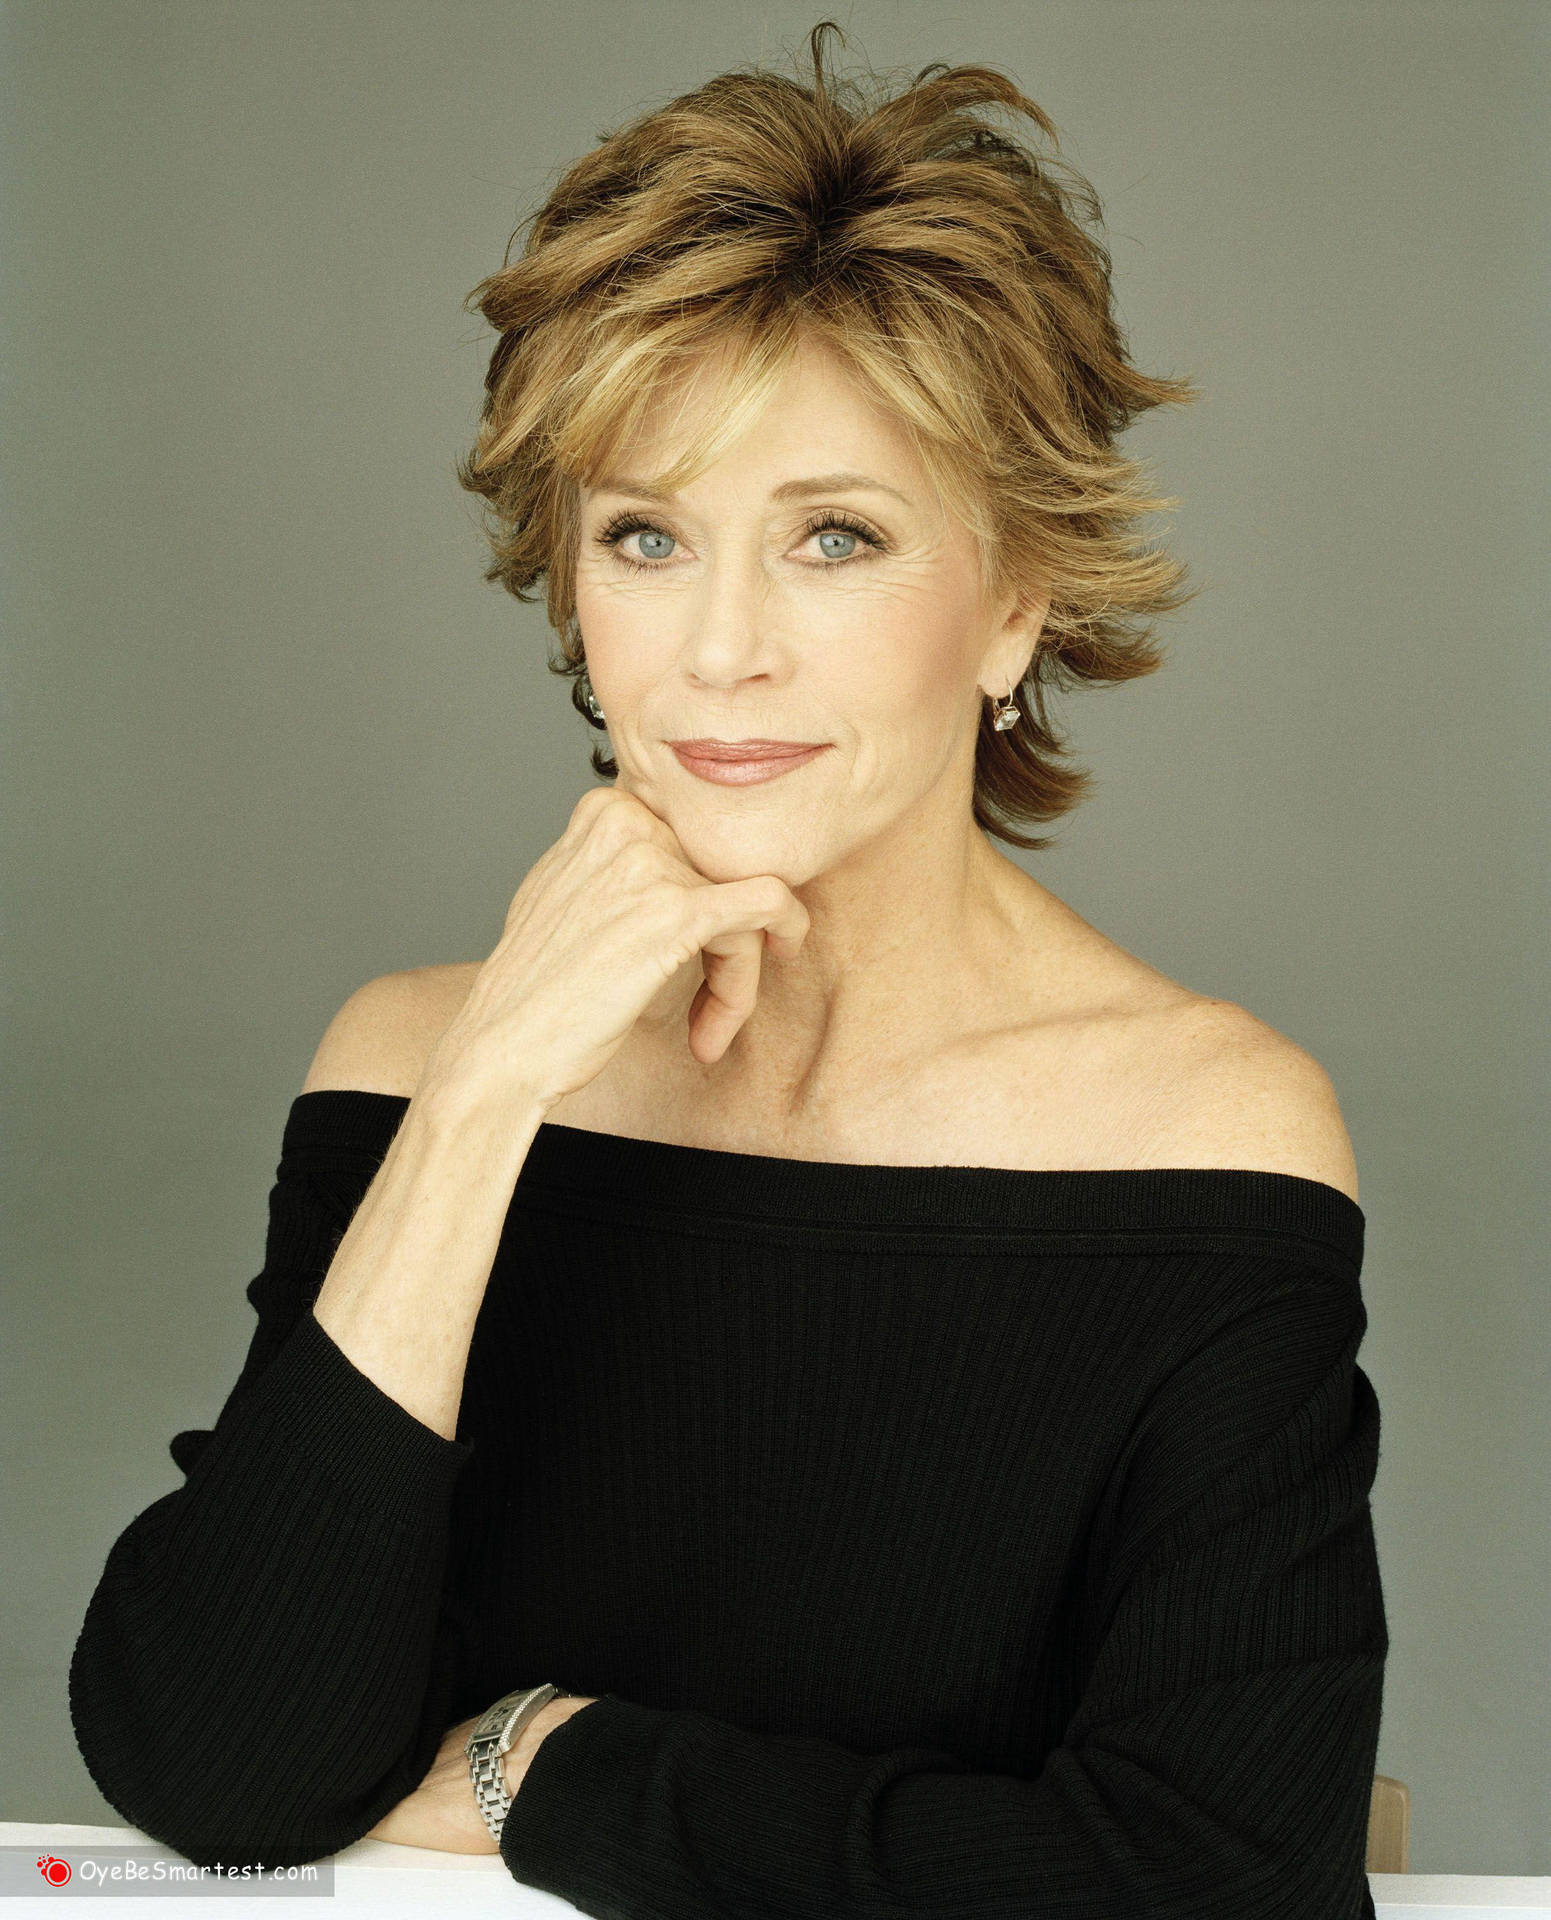 Amerikanskaskådespelerskan Jane Fonda I Svart. Wallpaper